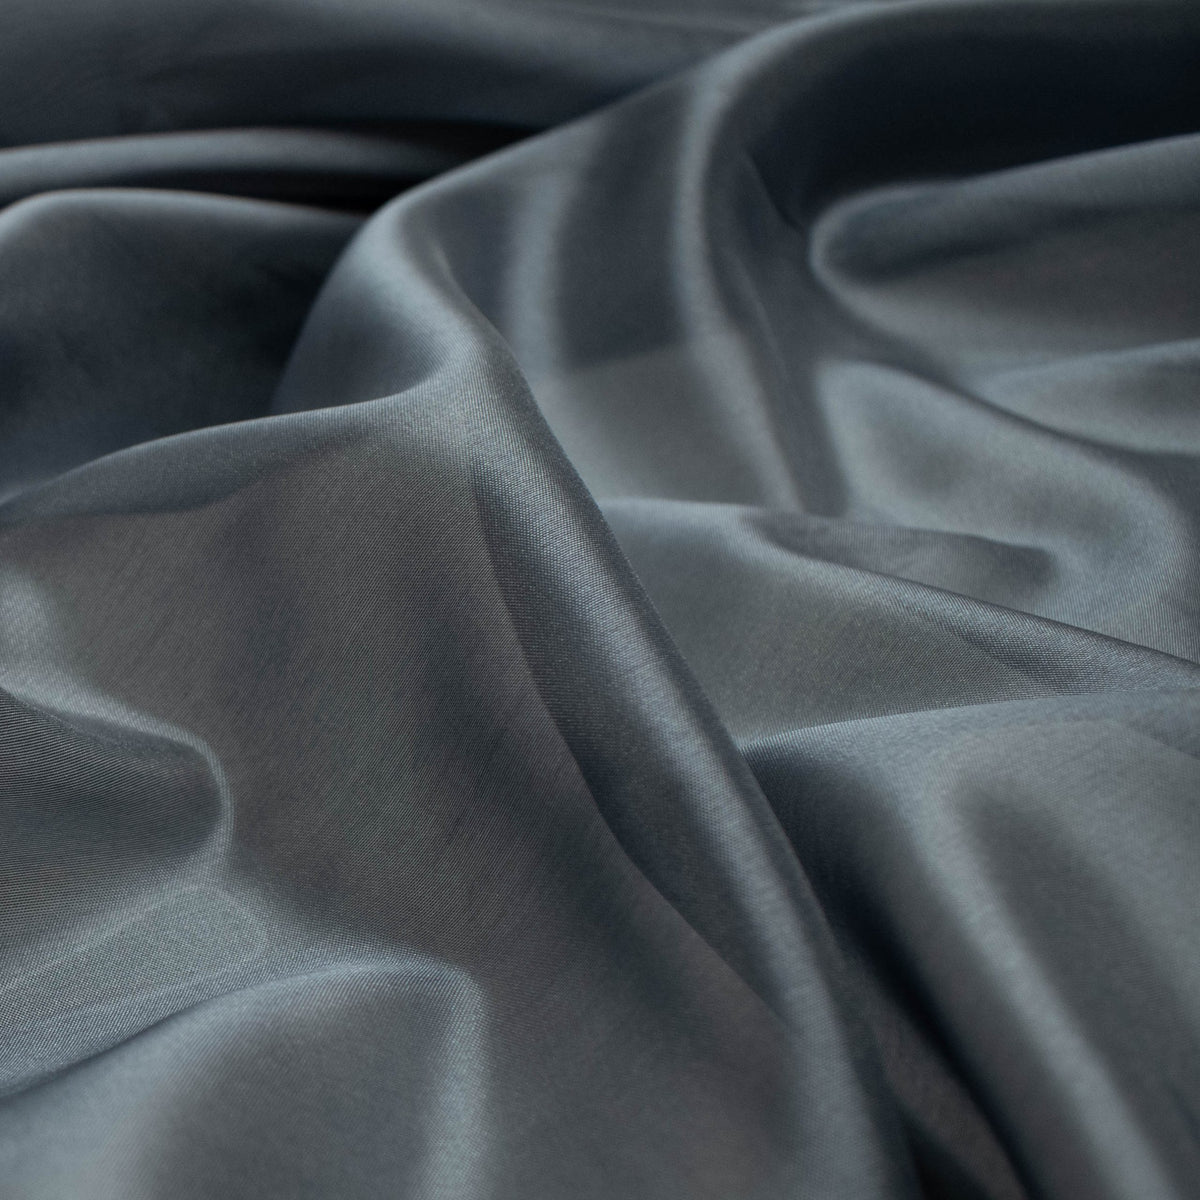 Sheers | Buy Online Sheers Fabrics in Australia – Homecraft Textiles